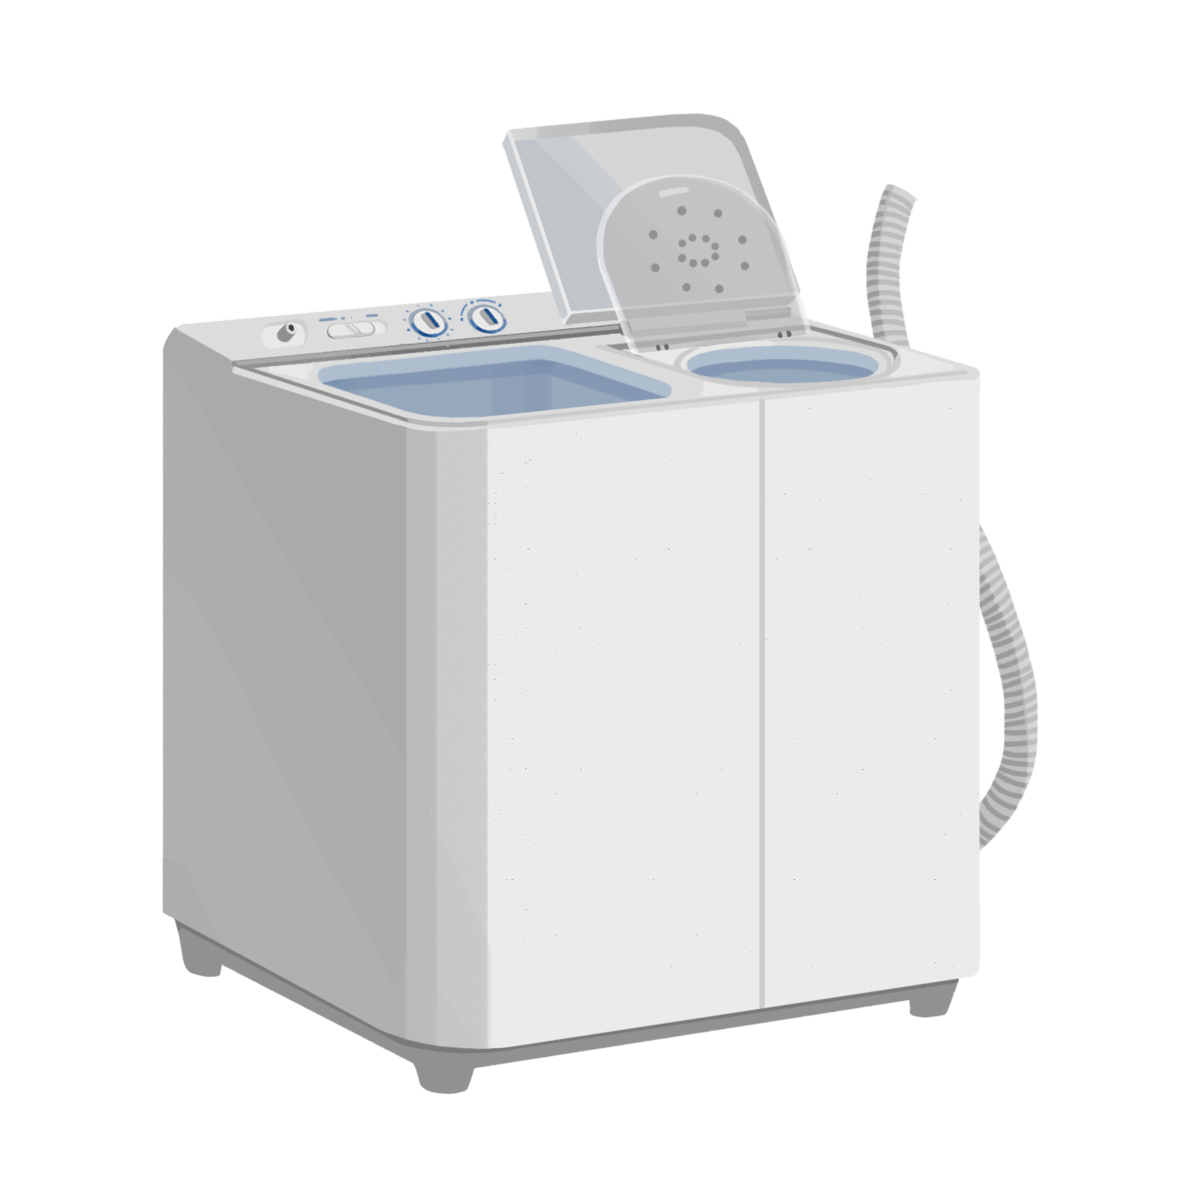 二槽式洗濯機のイラスト エコのモト